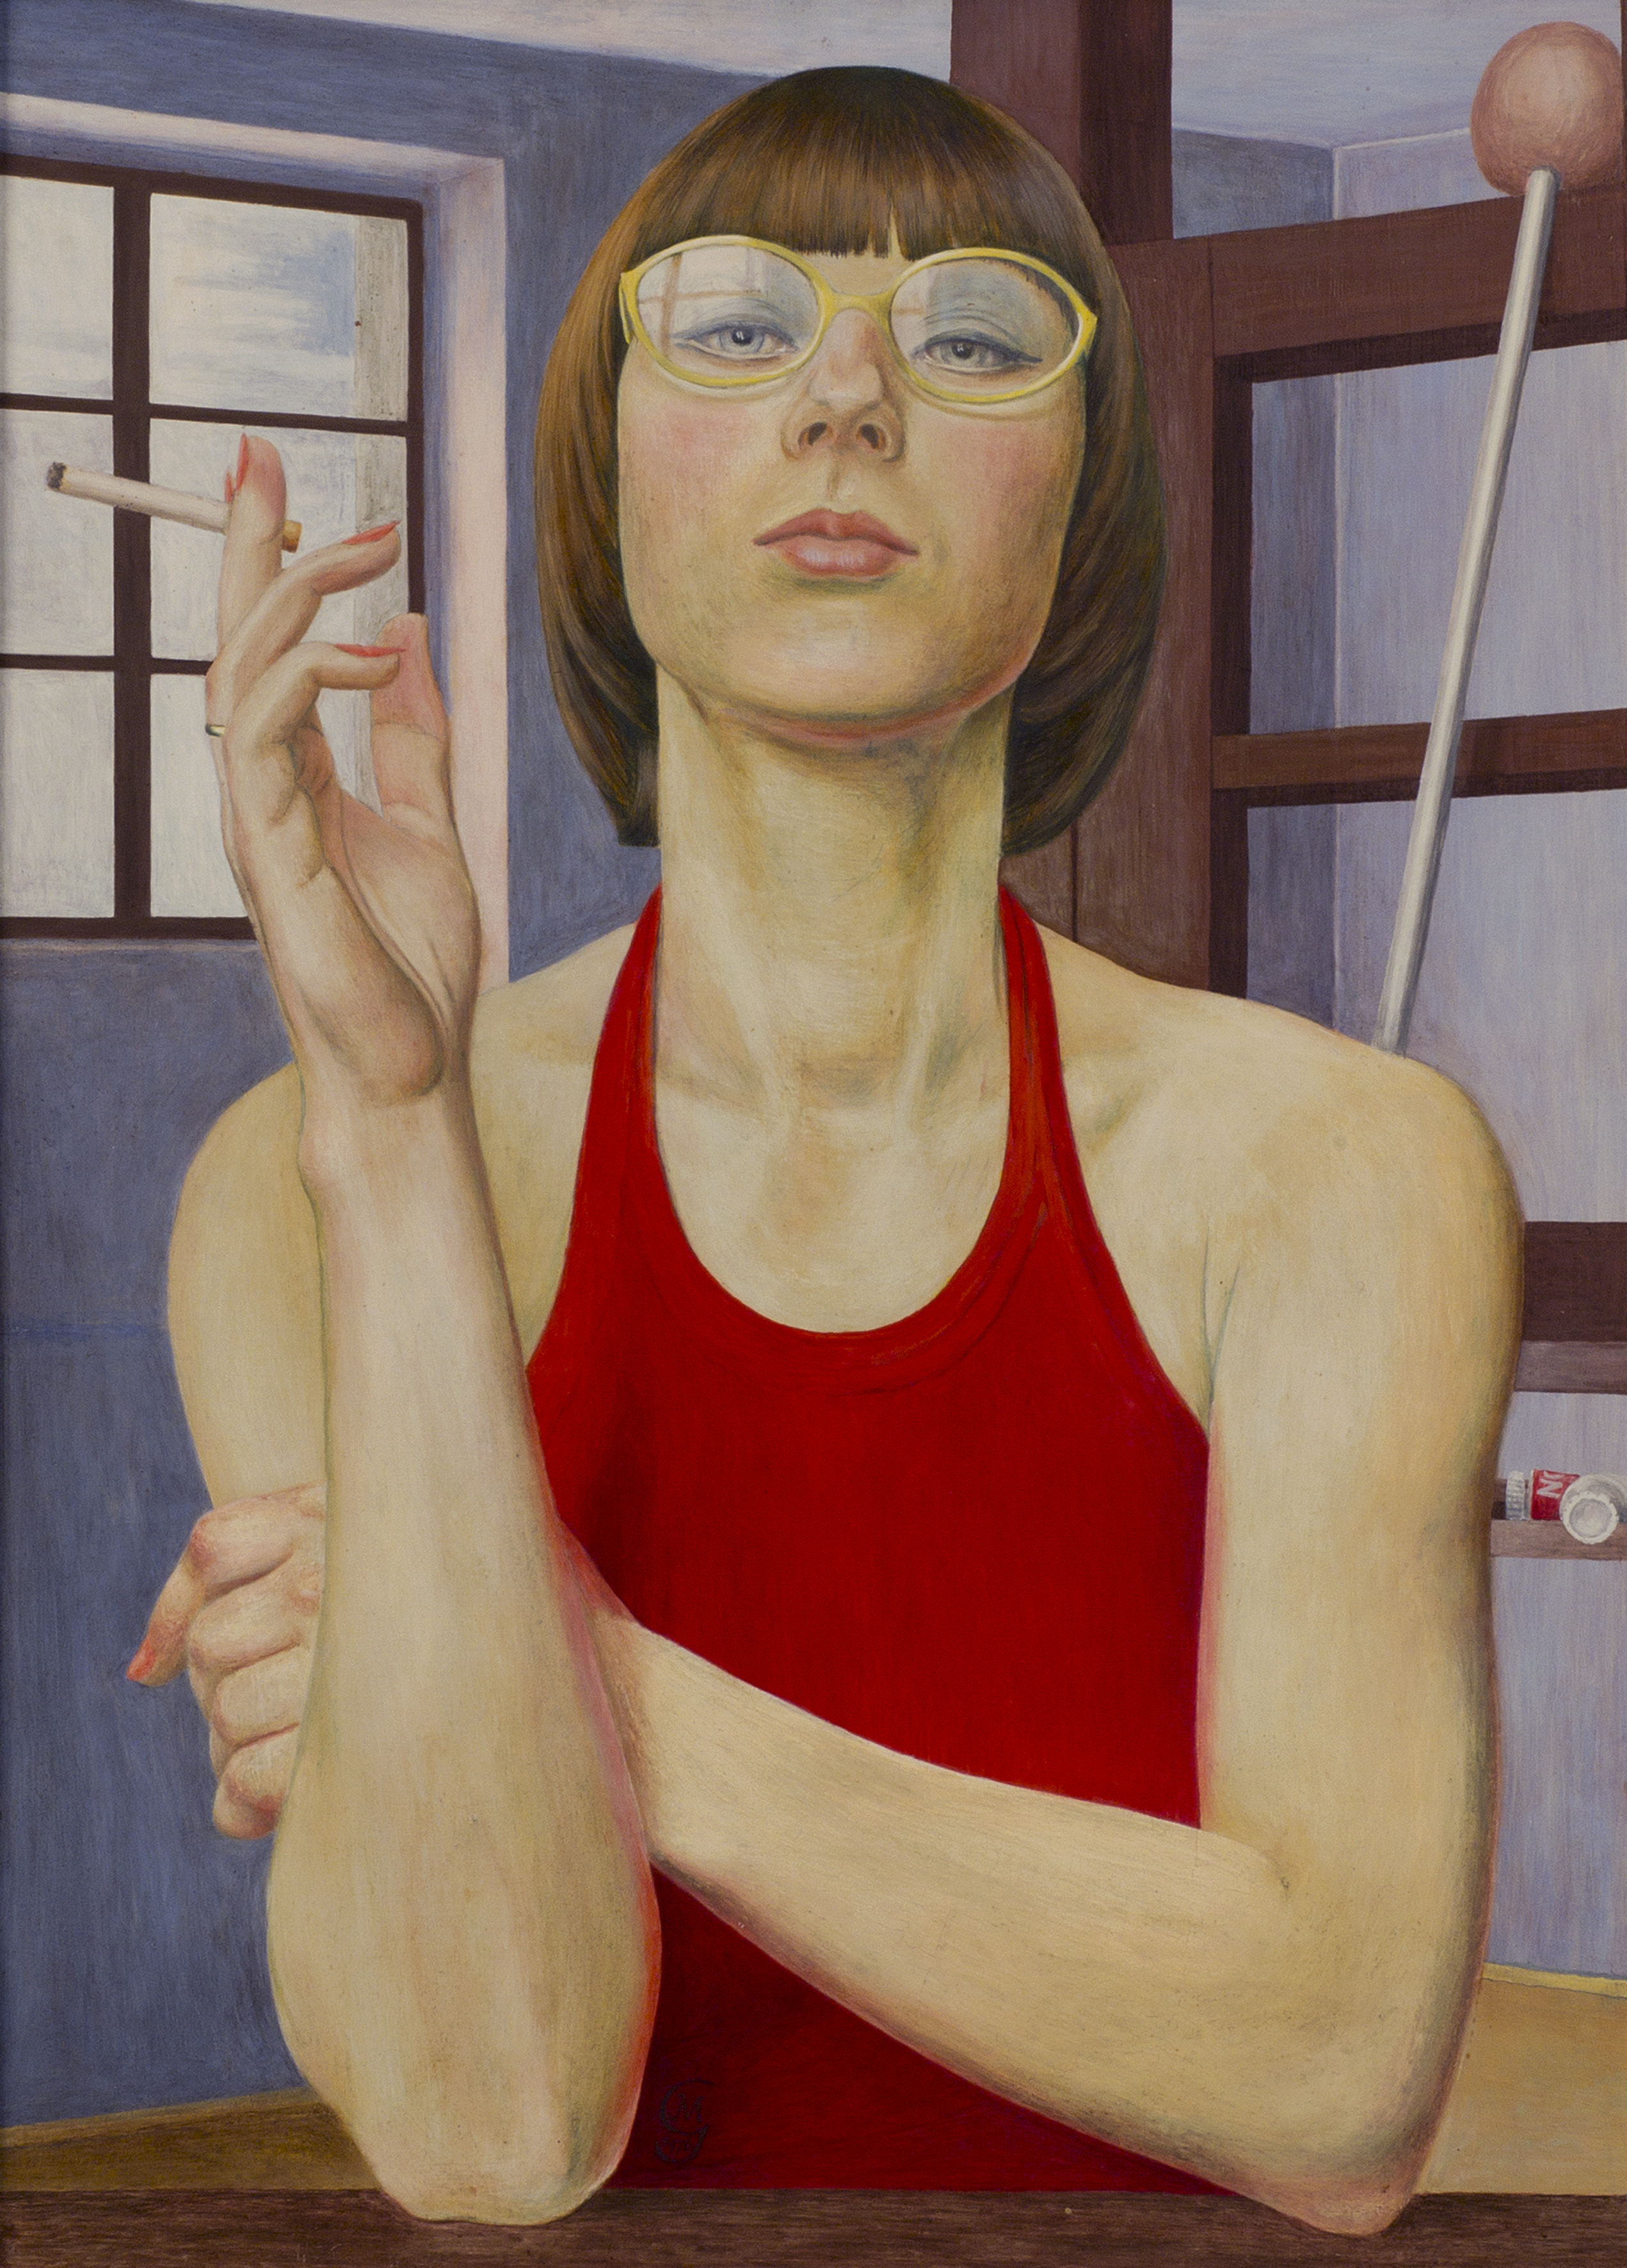 Gemälde: eine Frau mit kinnlangem braunem Haar und Brille blickt selbstbewusst frontal aus dem Bild. Ihr ärmelloses Oberteil ist rot. Ein Arm ist aufgestützt, in der Hand hält sie eine Zigarette. Im Hintergrund steht eine Staffelei. 